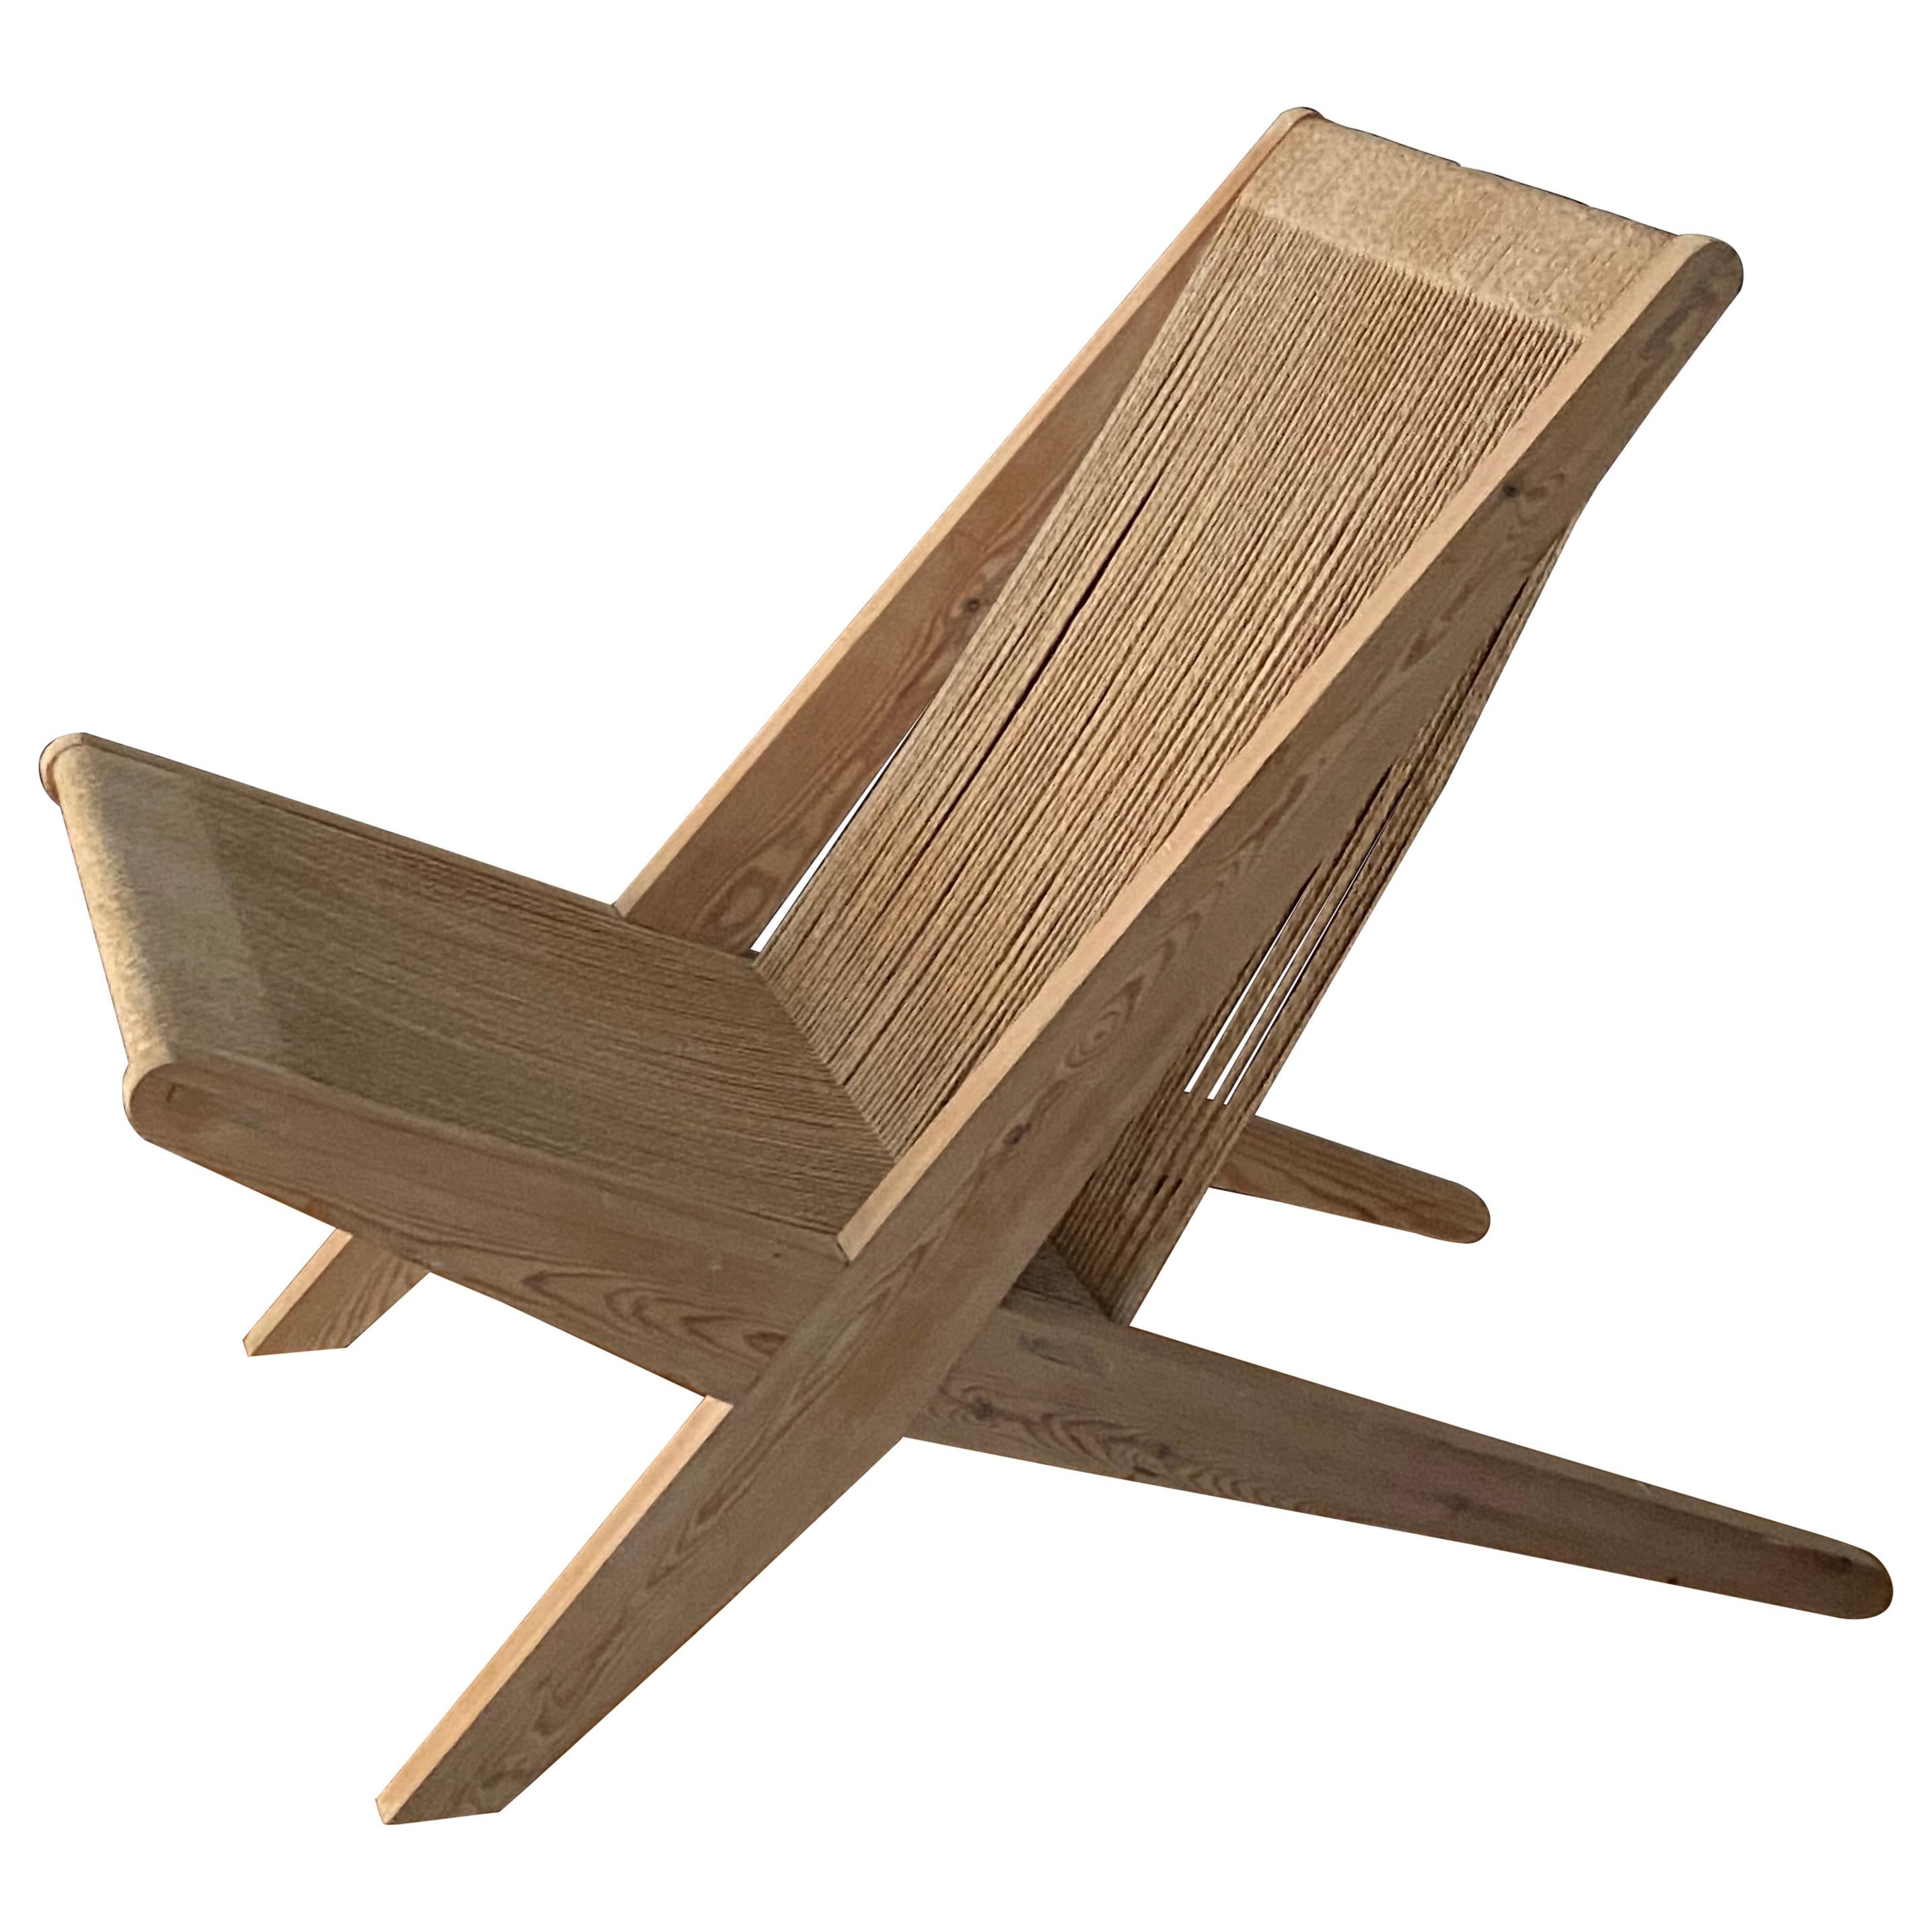 Poul Kjaerholm & Jørgen Høj 'Attribution' Lounge Chair, Pine Rope, Denmark 1960s